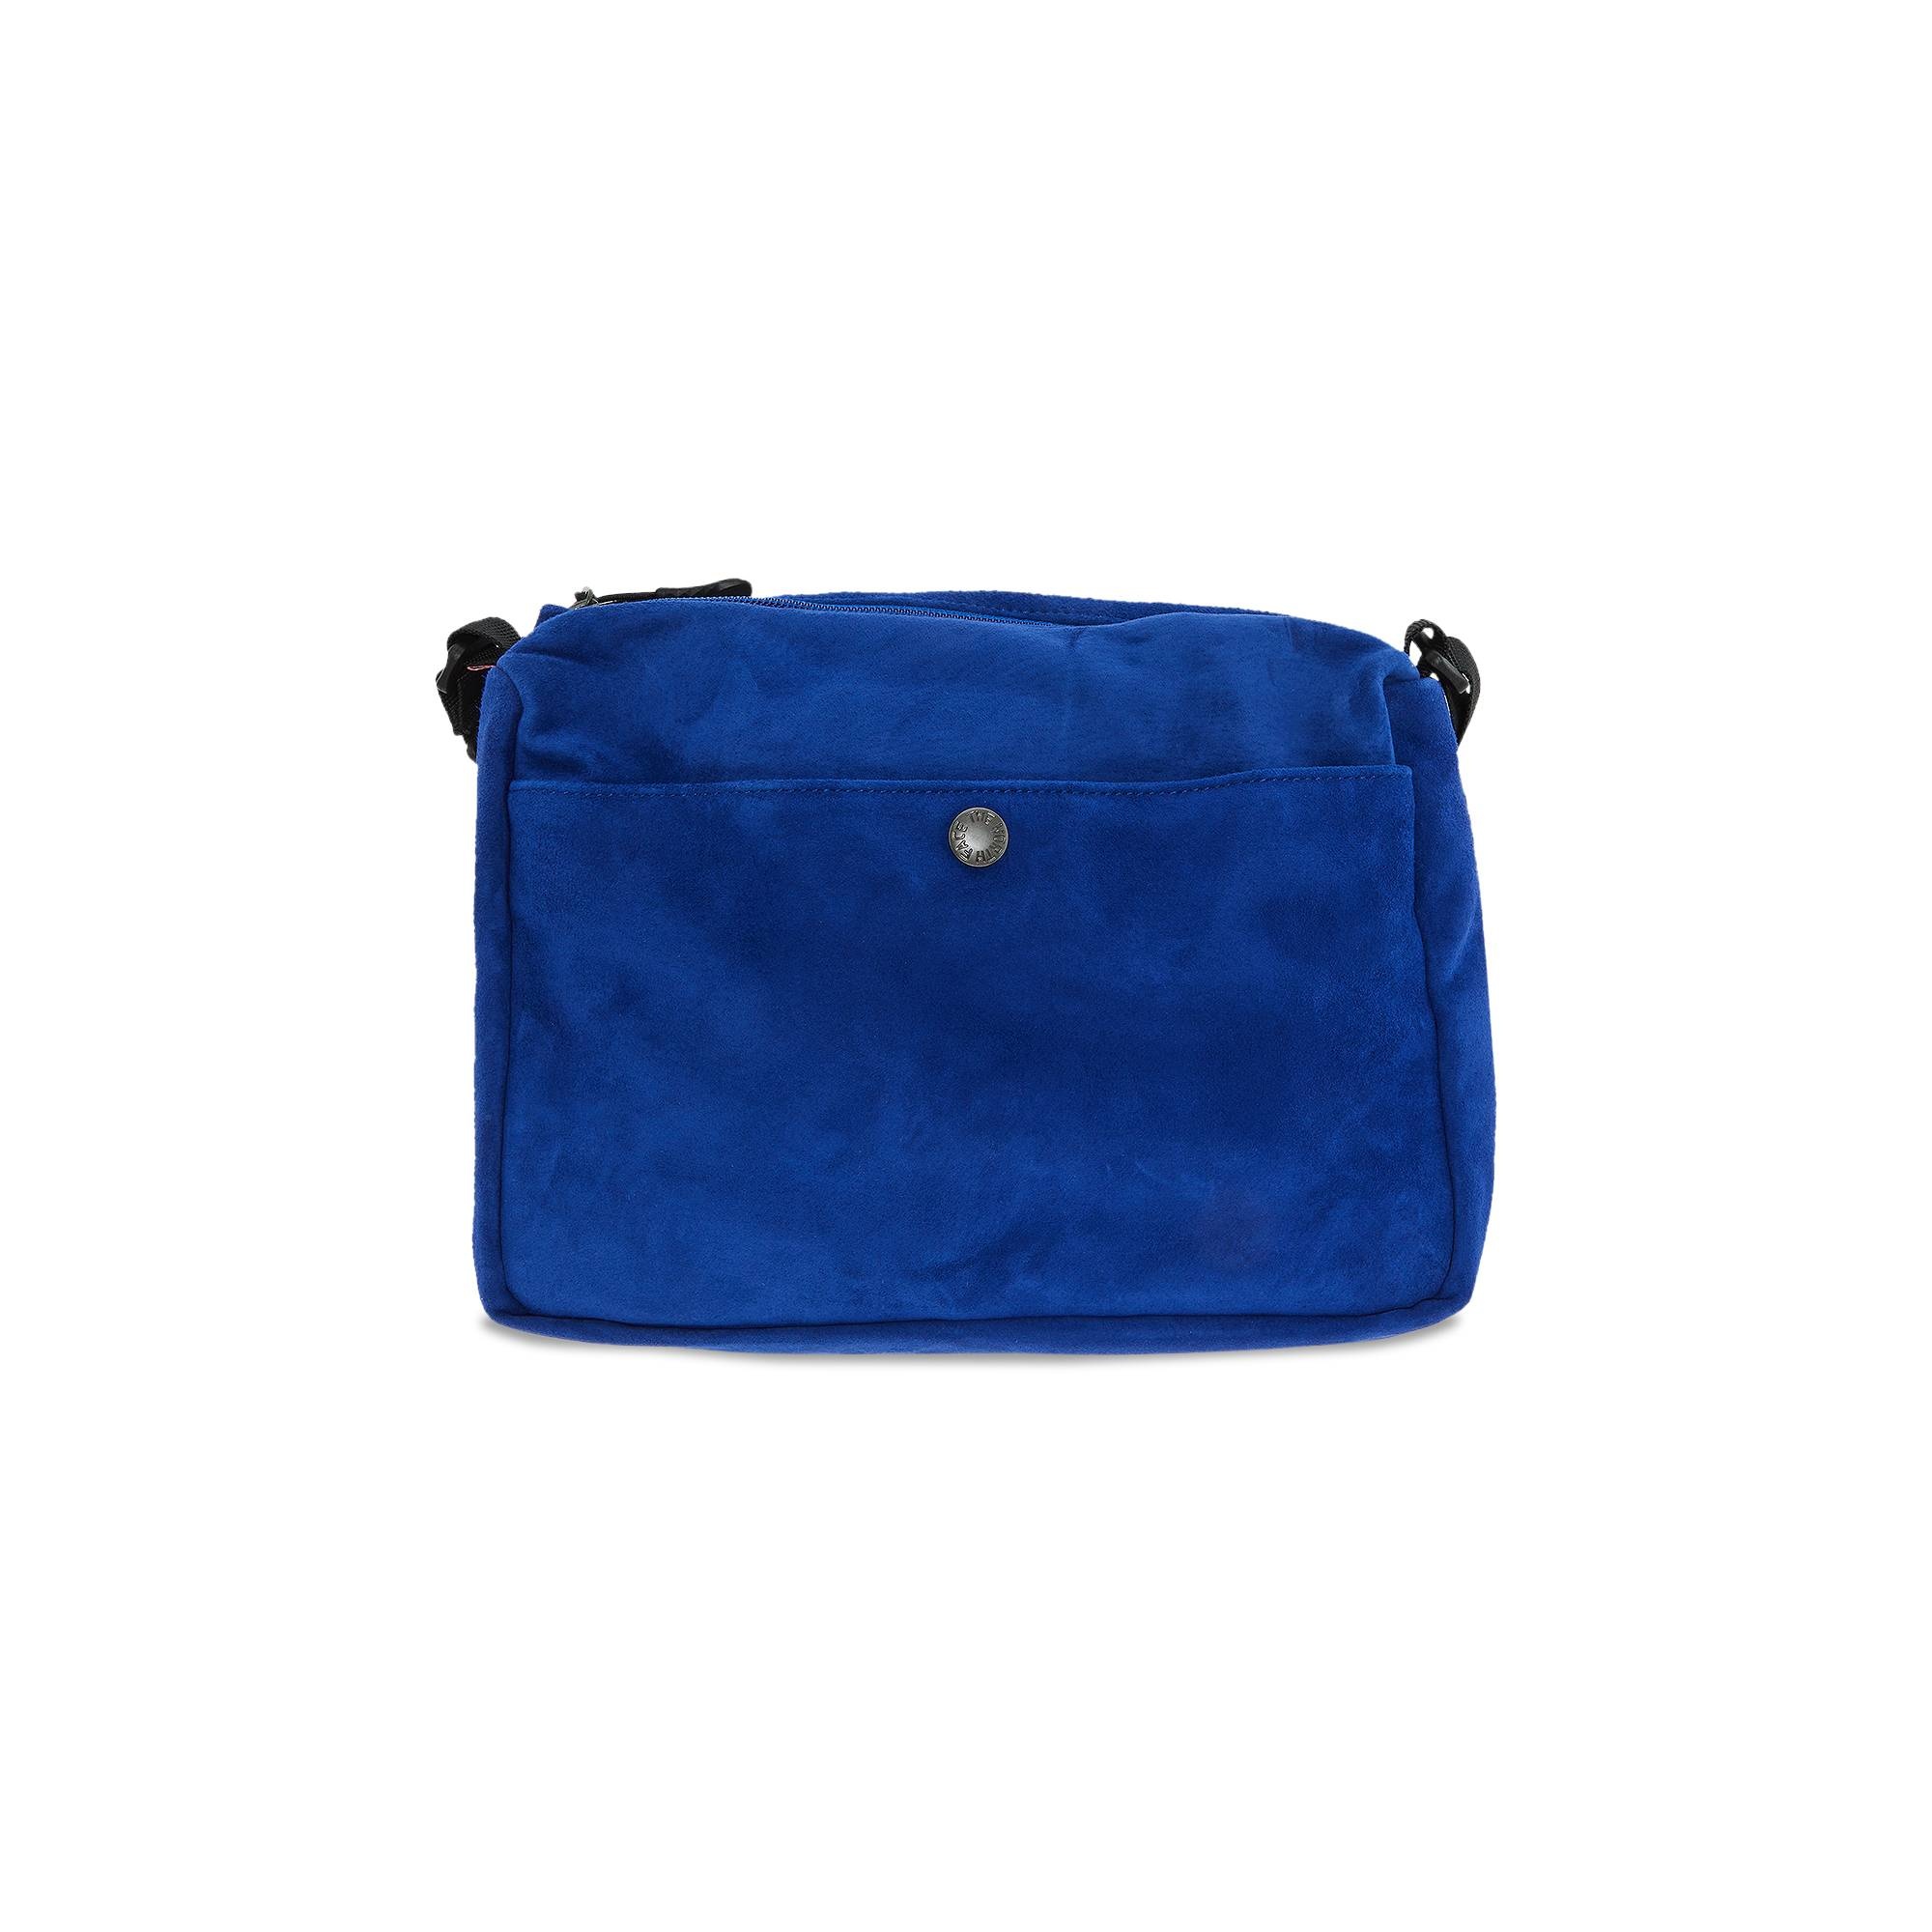 17,100円Supreme TNF Suede Shoulder Bag Blue